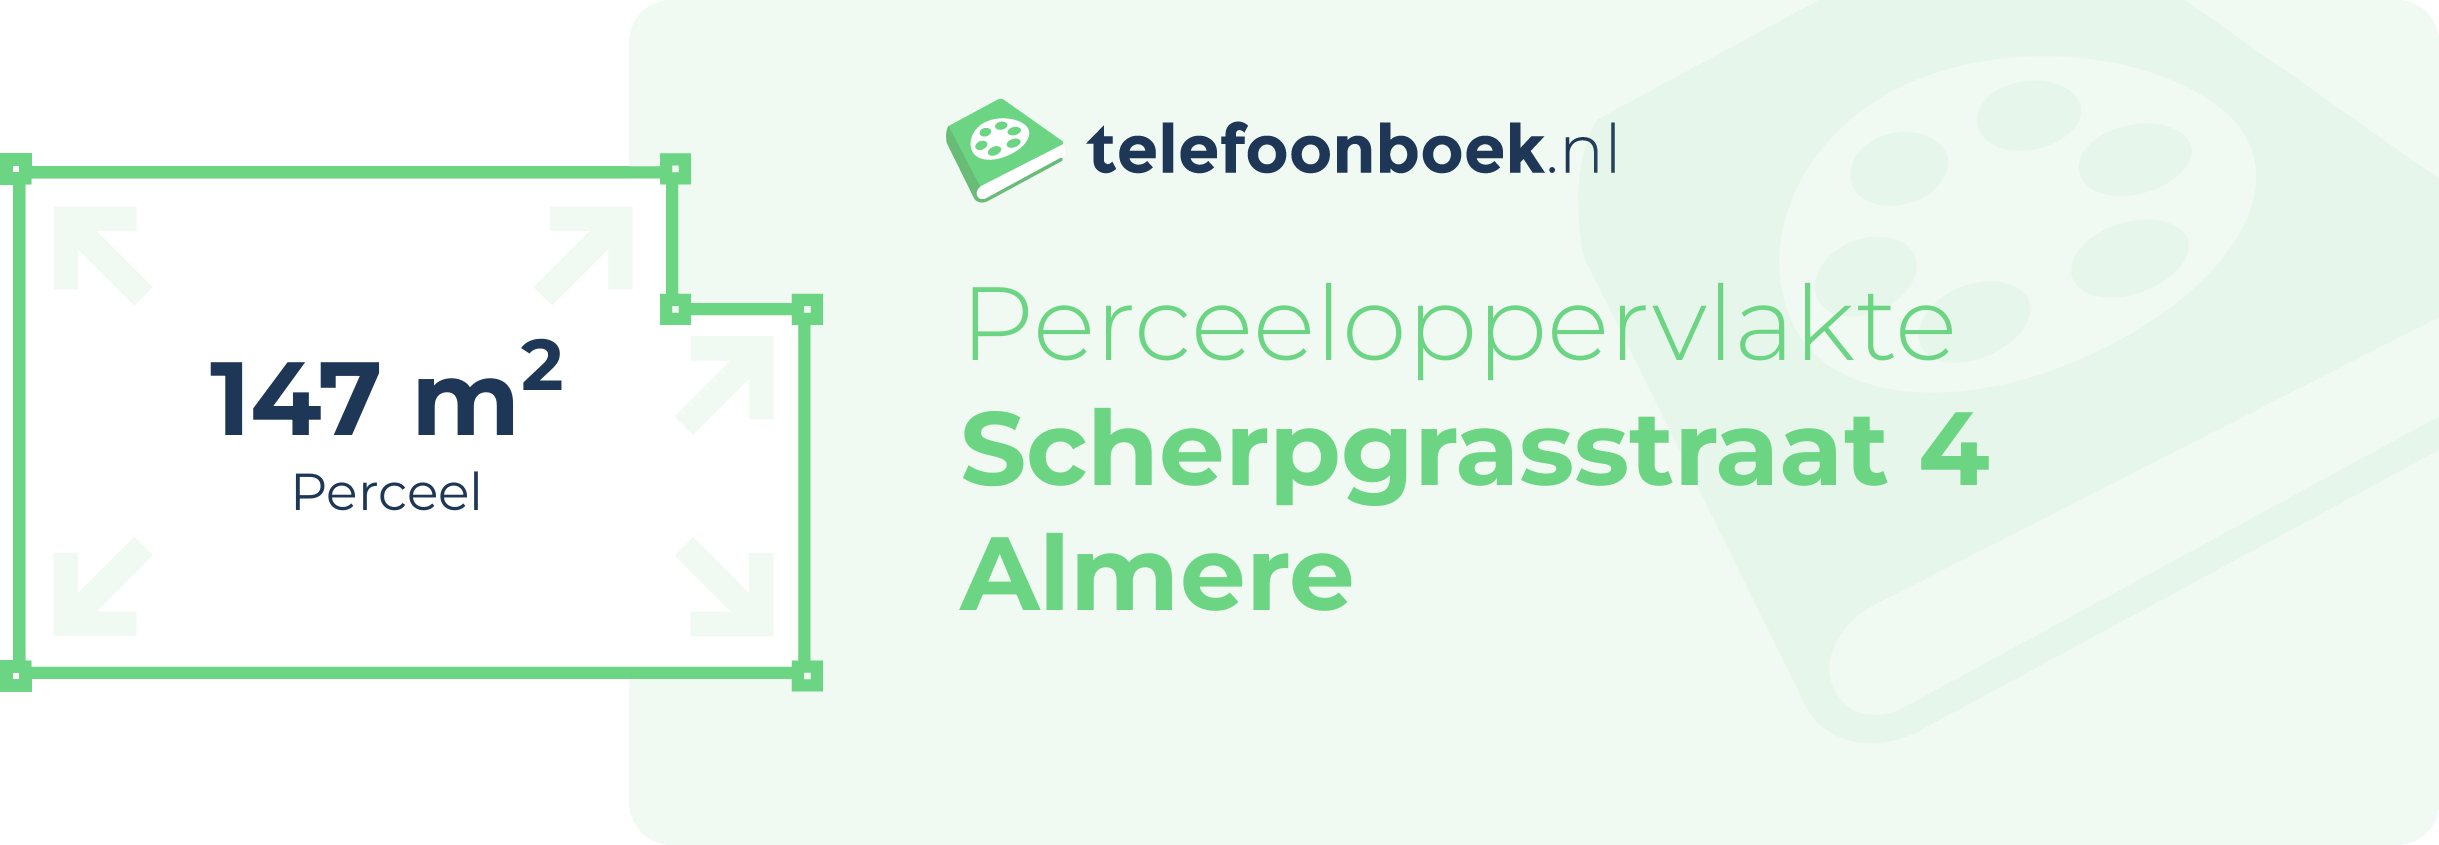 Perceeloppervlakte Scherpgrasstraat 4 Almere